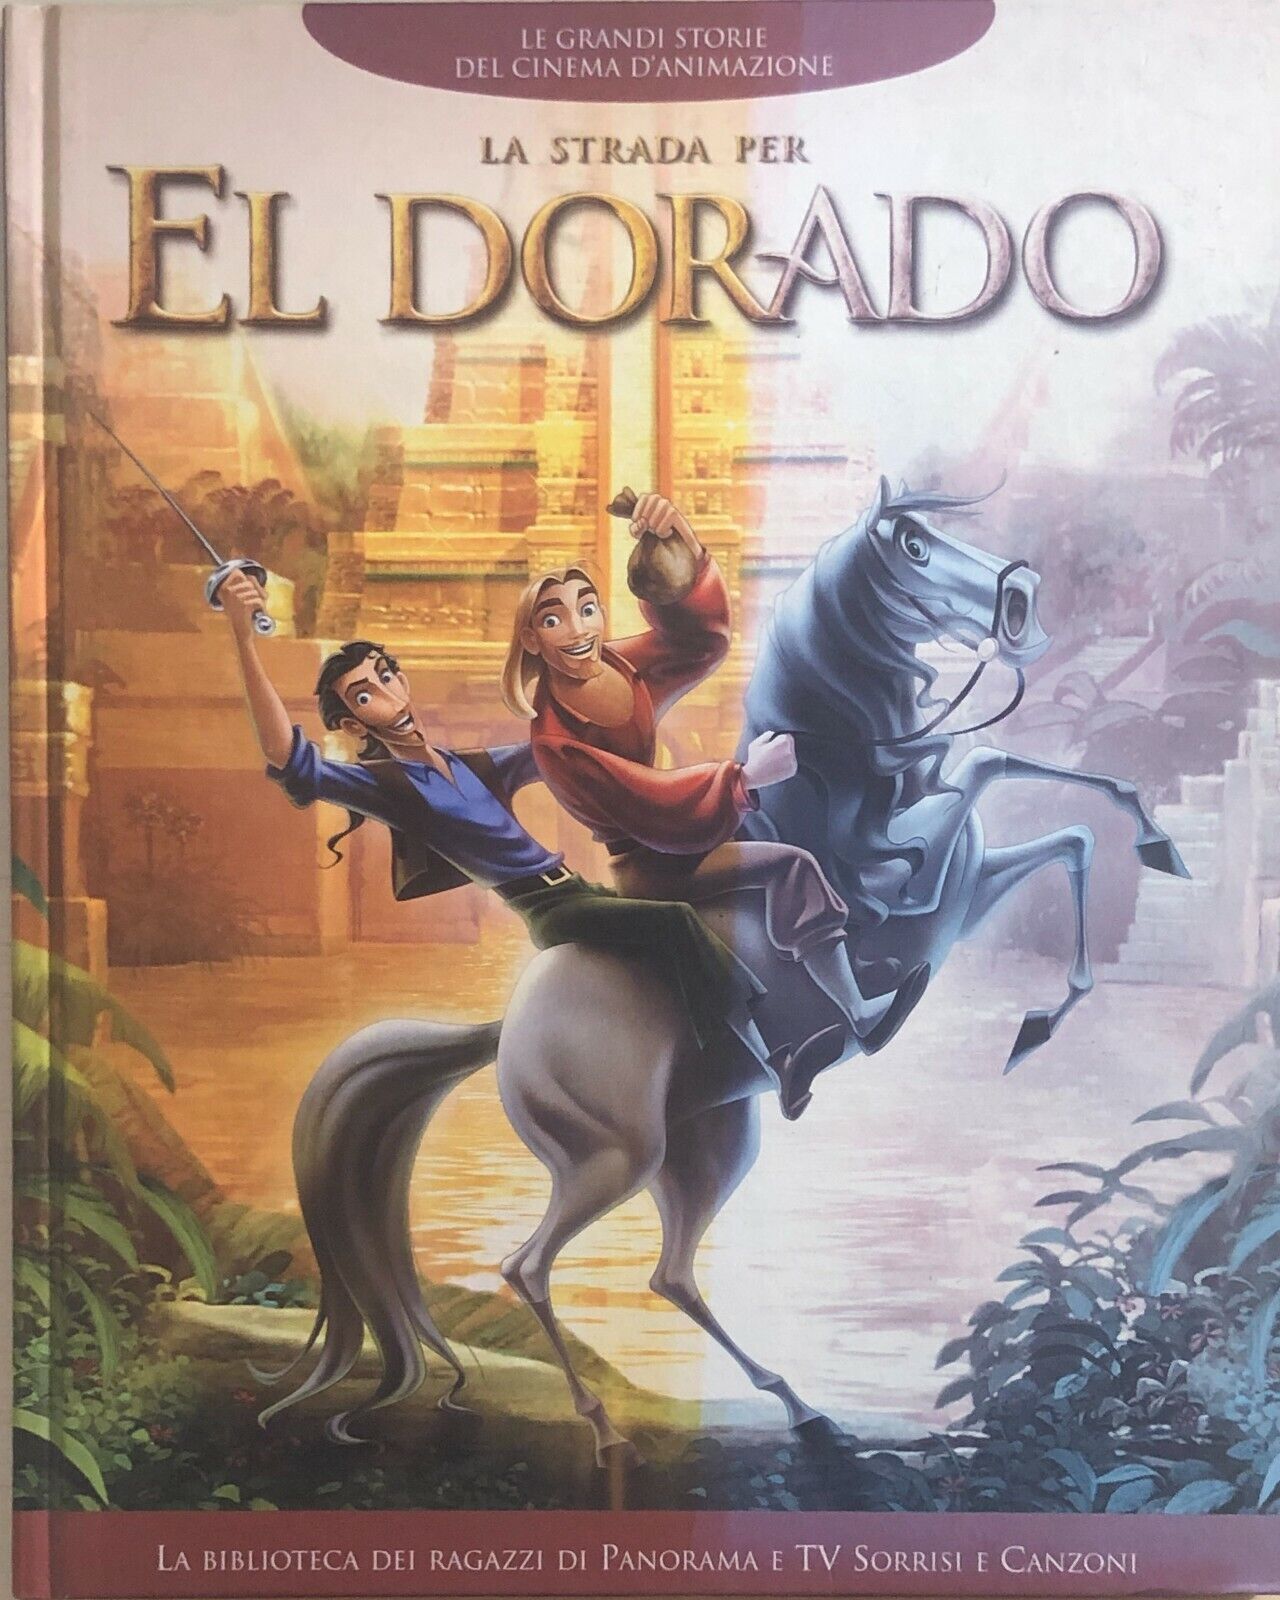 La strada per El Dorado di Aa.vv., 2000, Mondadori